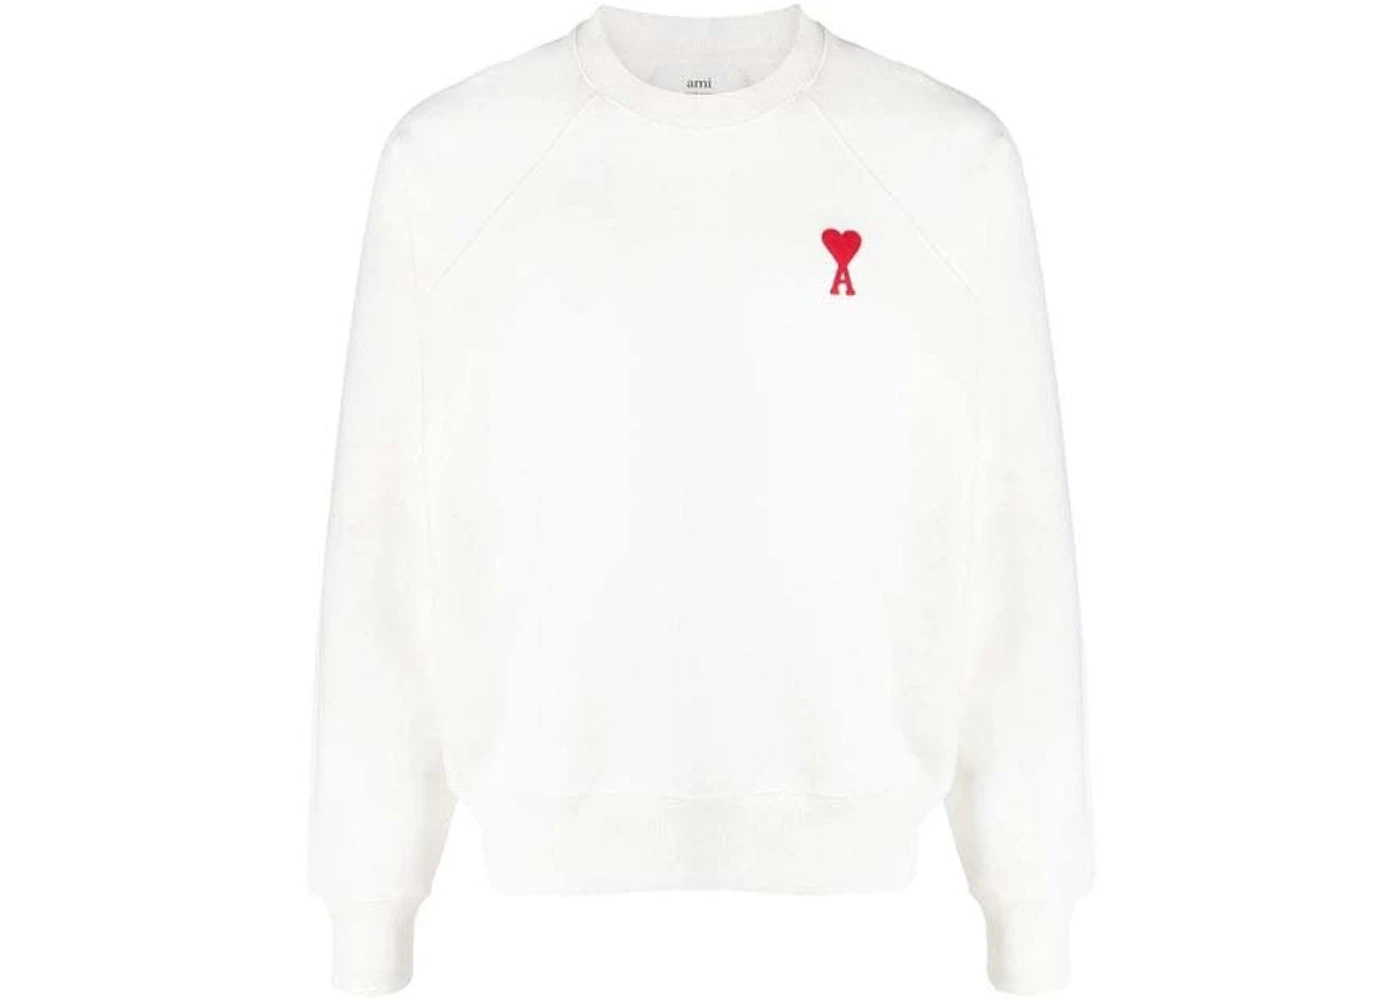 Ami Paris Logo Sweatshirt White/Red Men's - US